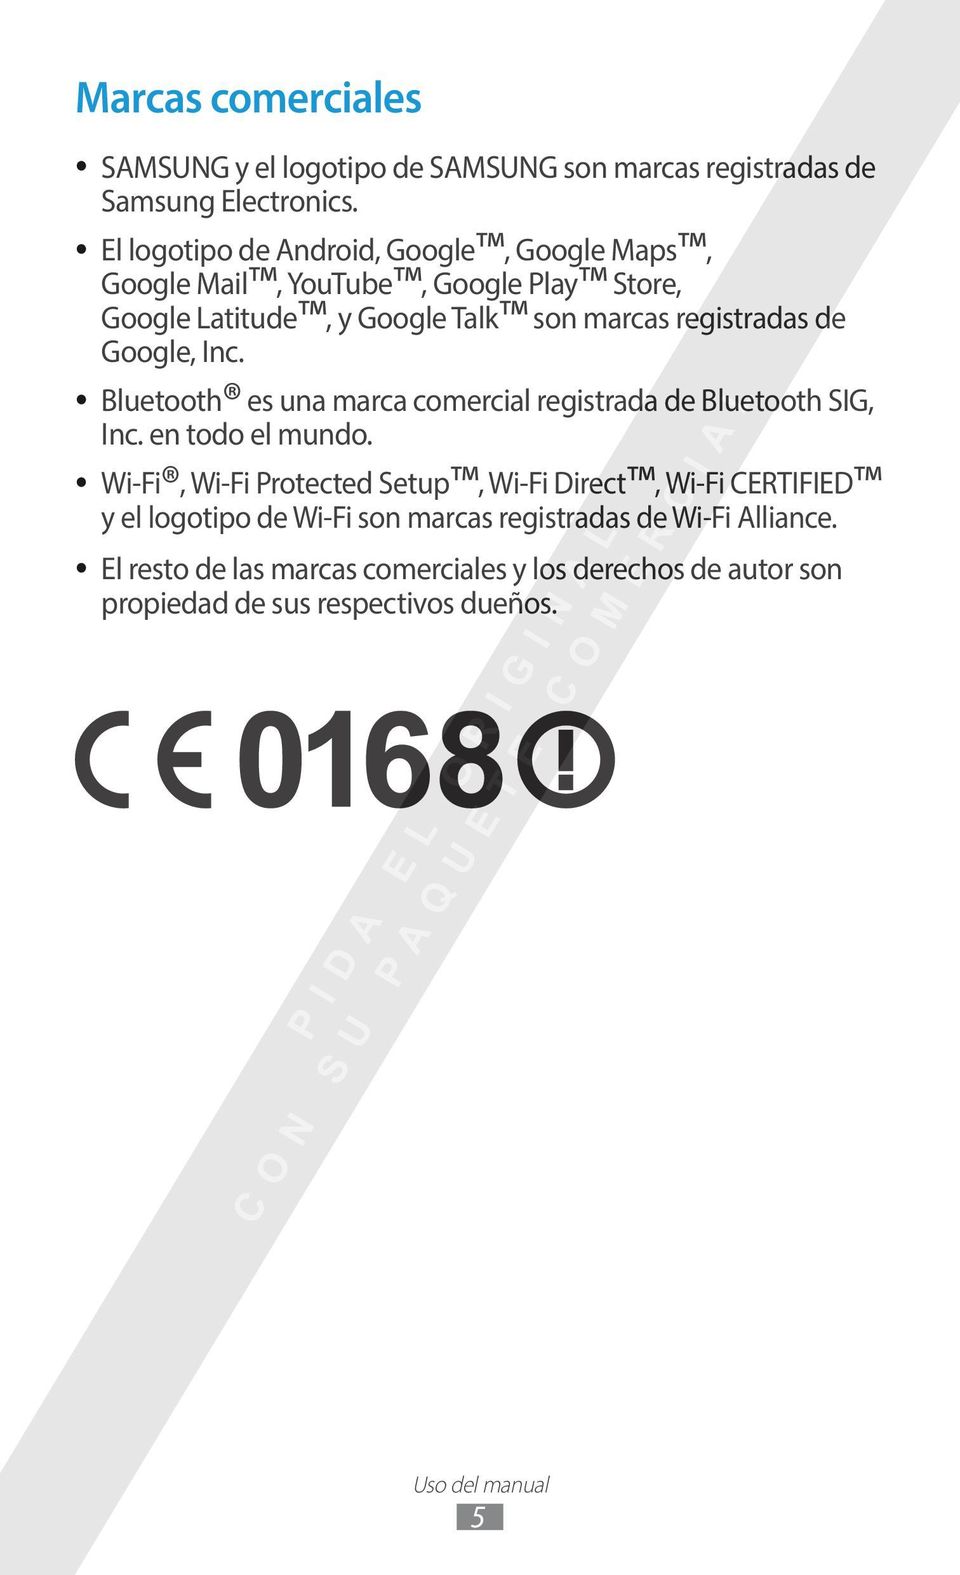 Google, Inc. Bluetooth es una marca comercial registrada de Bluetooth SIG, Inc. en todo el mundo.